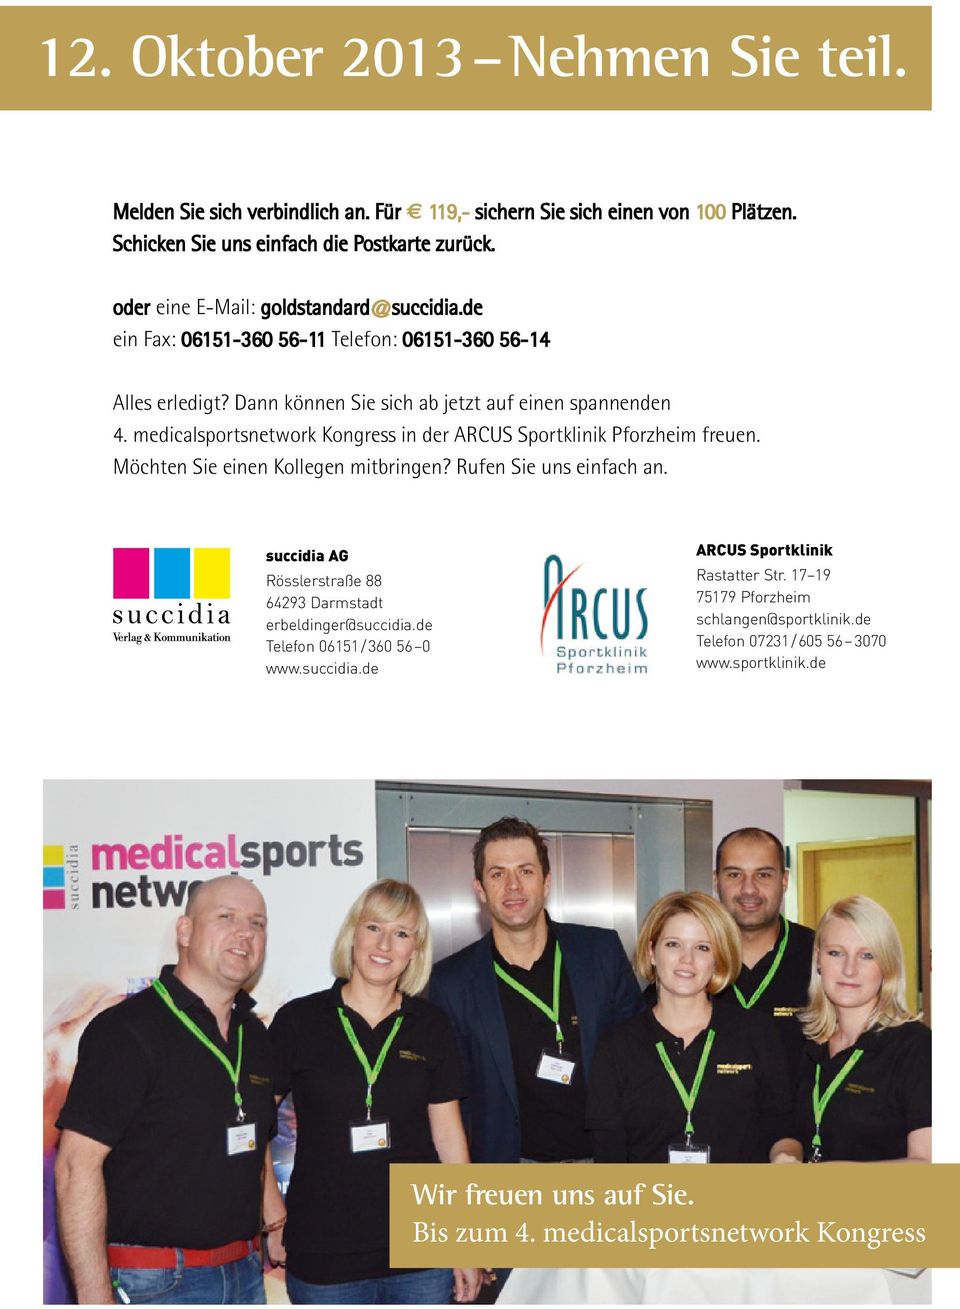 medicalsportsnetwork Kongress in der ARCUS Sportklinik Pforzheim freuen. Möchten Sie einen Kollegen mitbringen? Rufen Sie uns einfach an.